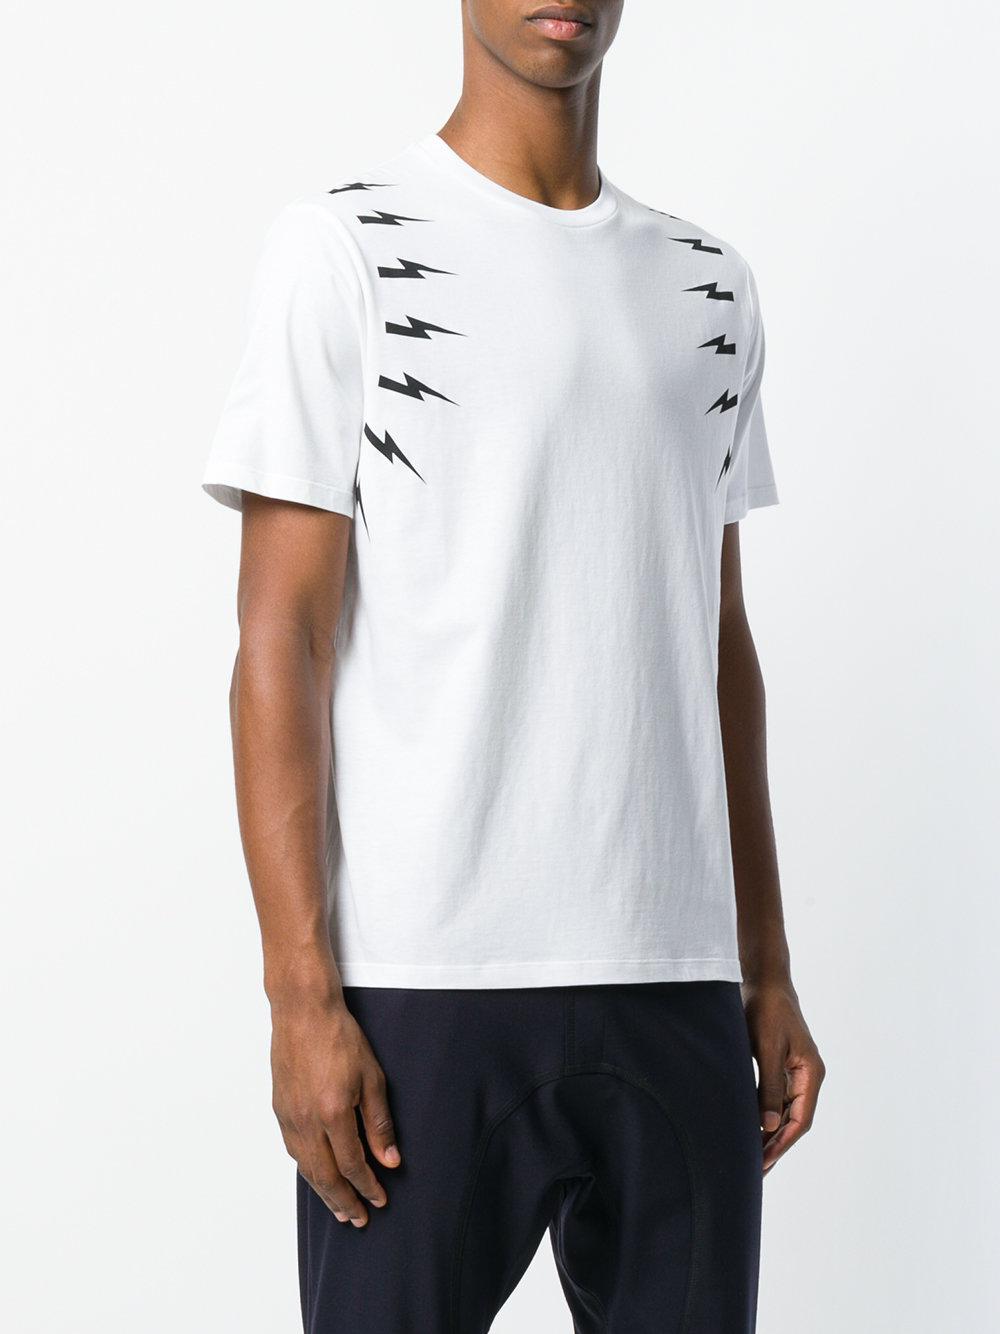 Neil Barrett Lightning Bolt T-shirt in White for Men - Lyst